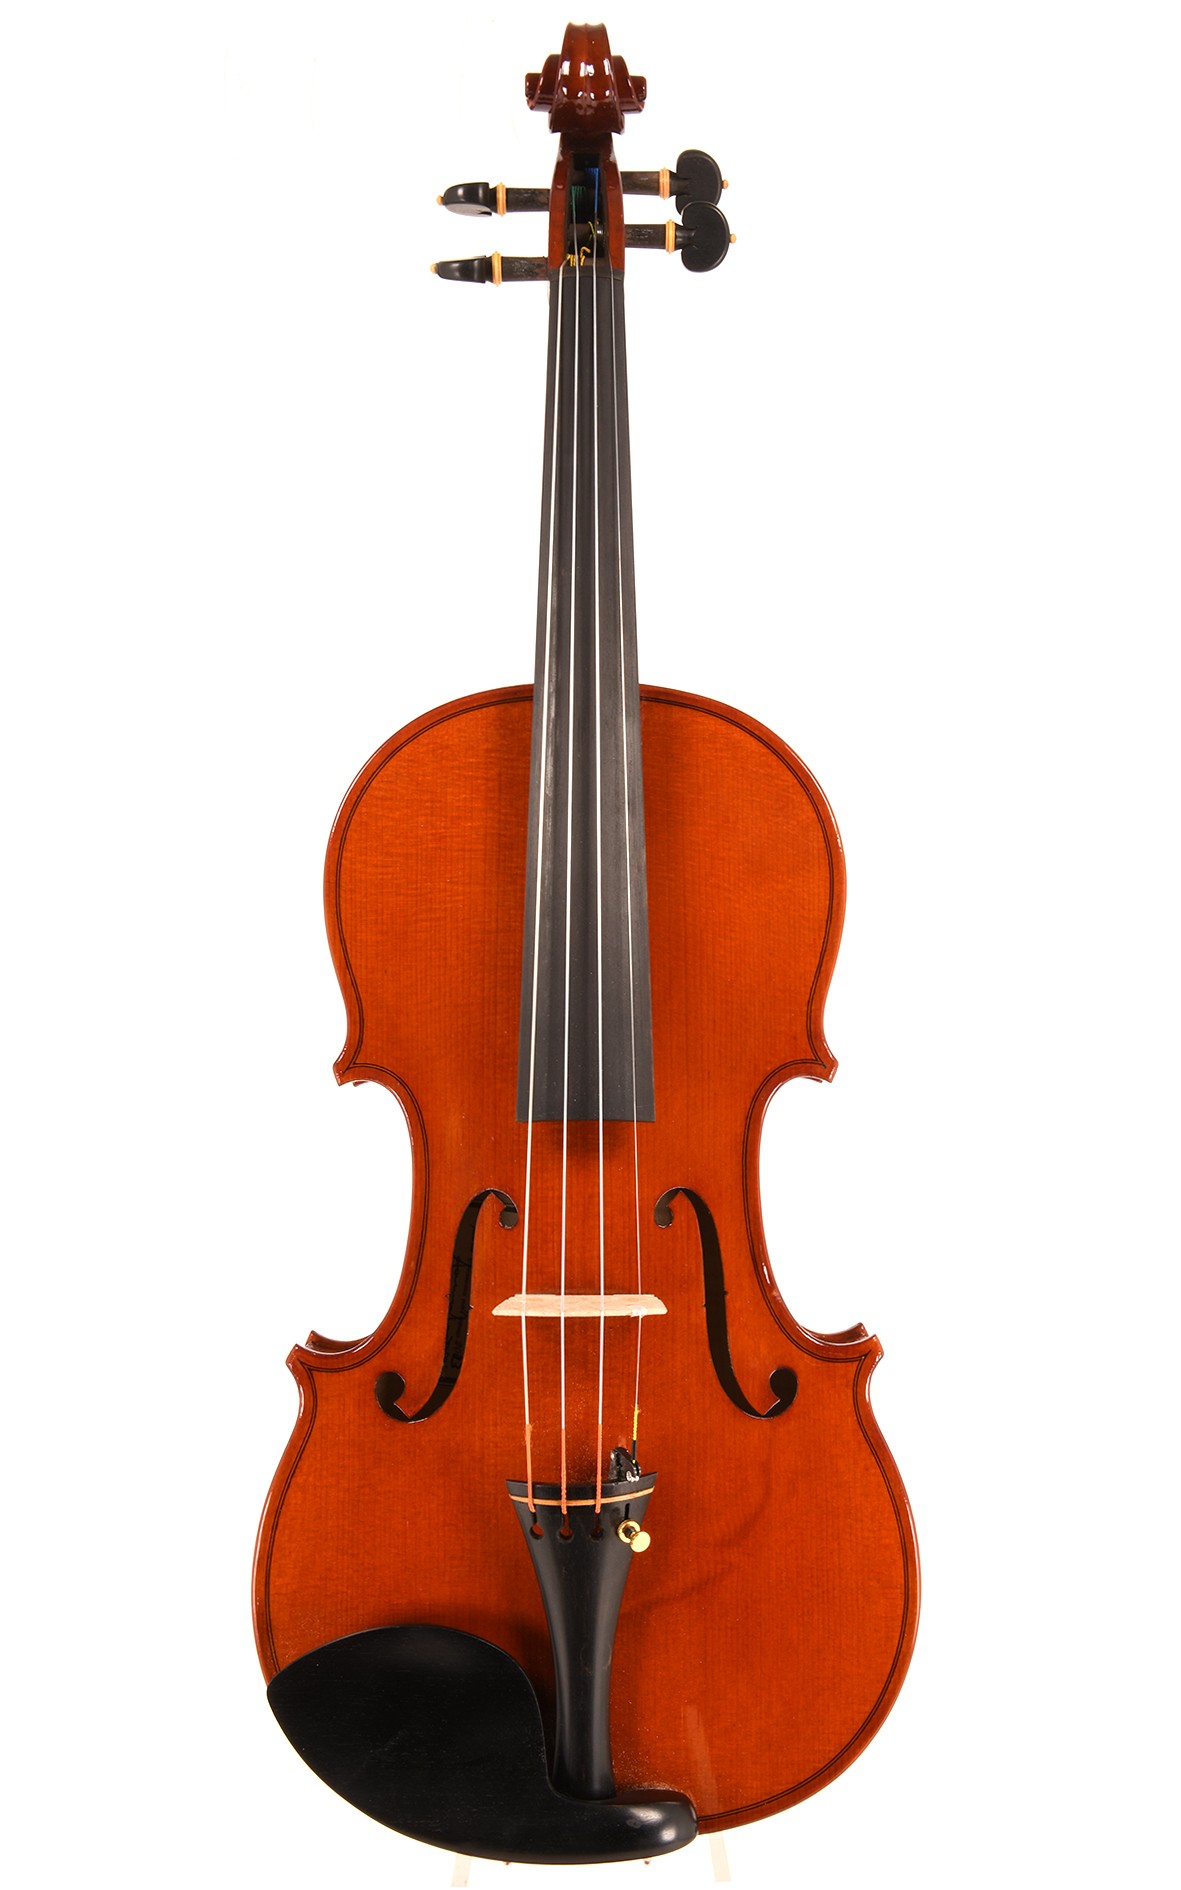 Cremona violin by Lorenzo Locatelli